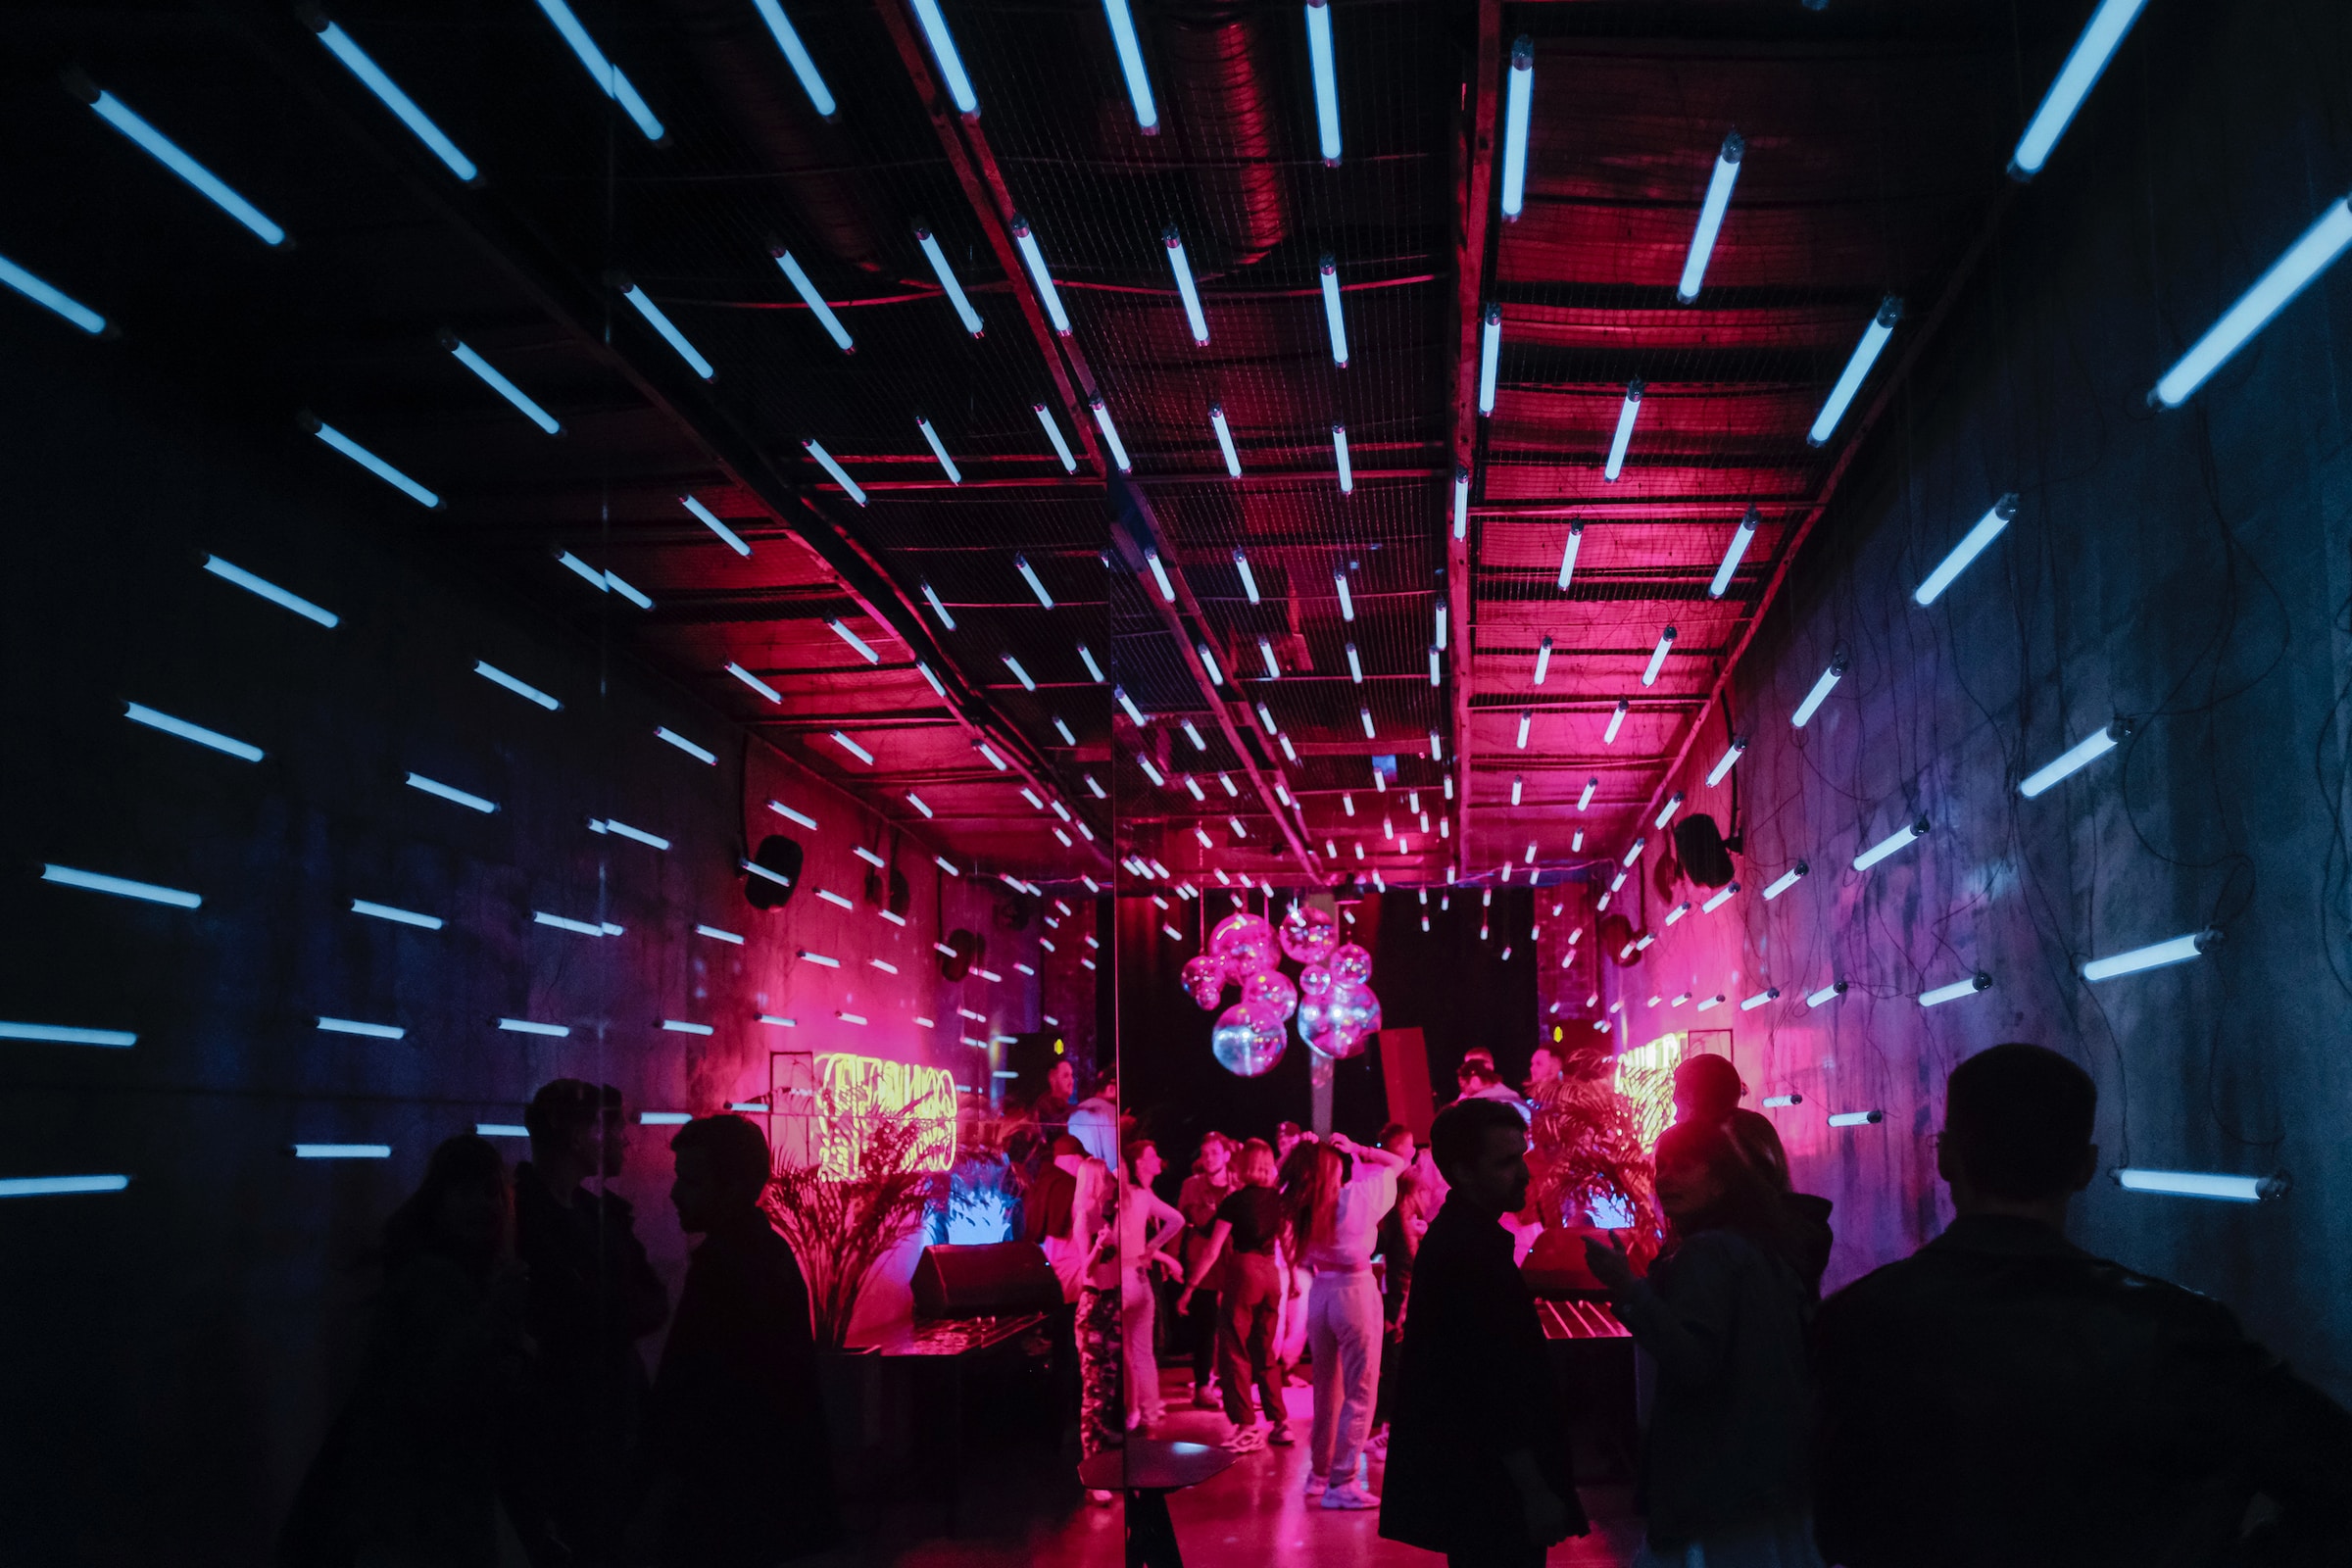 foto van een groep dansen mensen met neonlicht